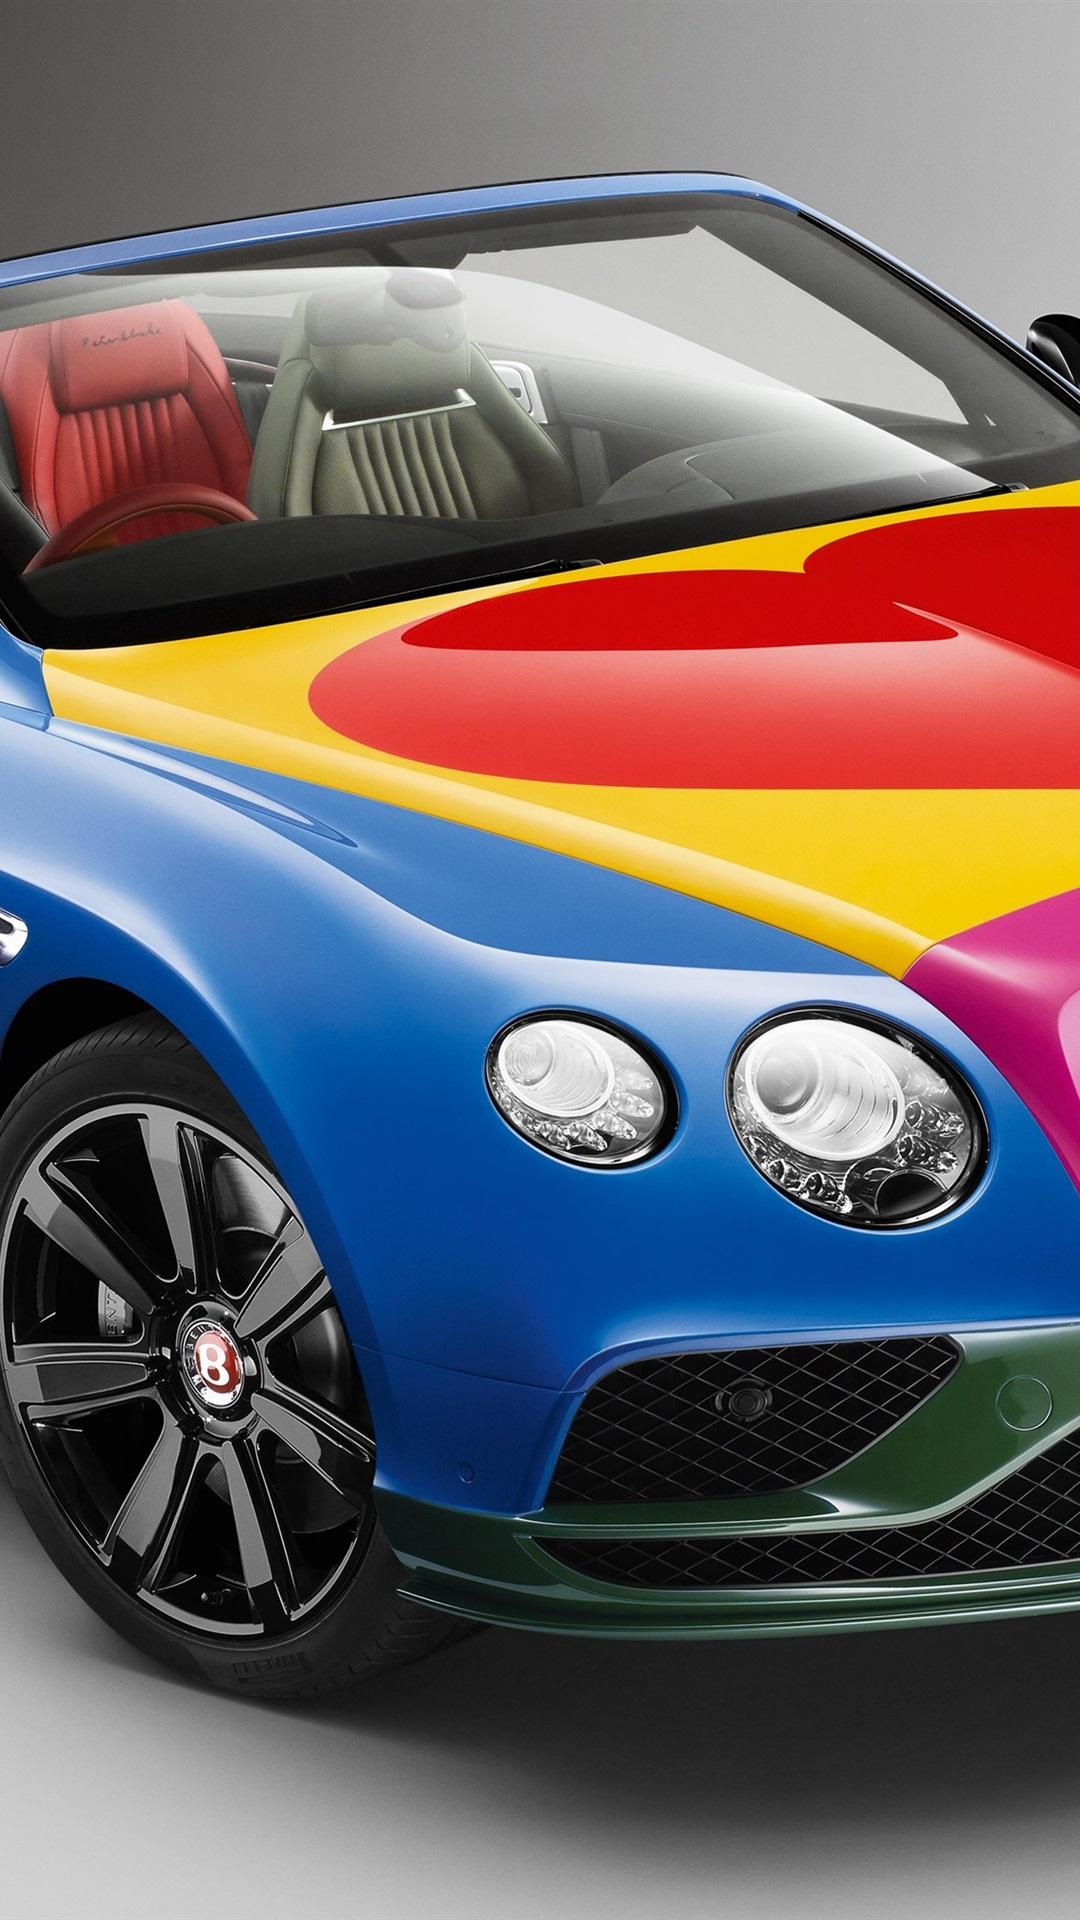 Bentley Continental GT V8 S Convertible car beautiful colors